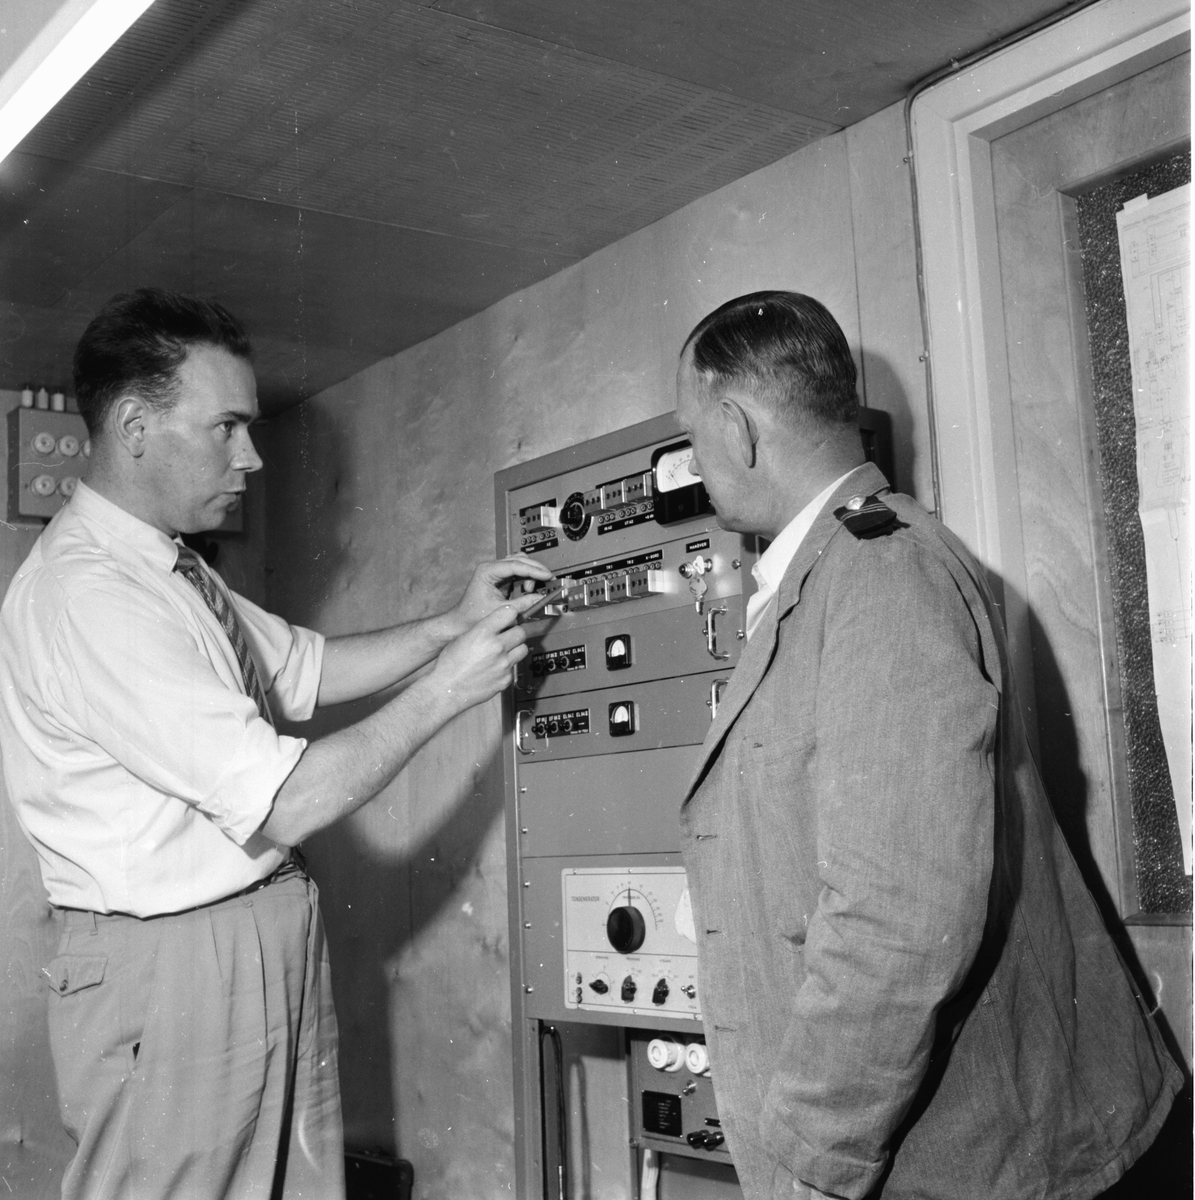 FM-sändaren på studion.
20/5 1960